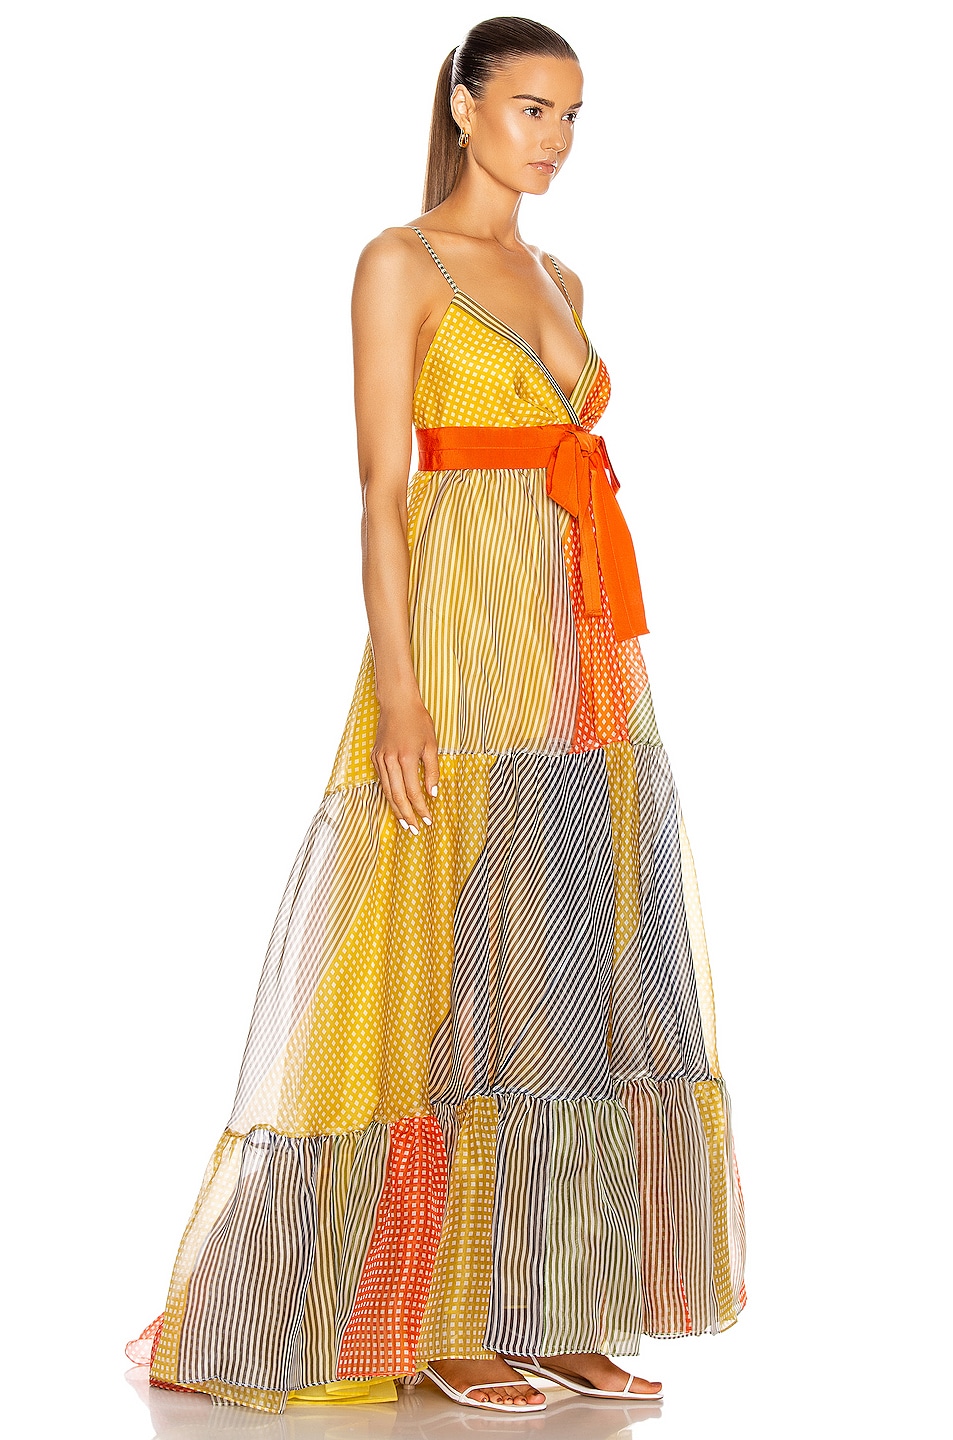 SILVIA TCHERASSI Tomasa Dress in Multi Gingham Patch | FWRD